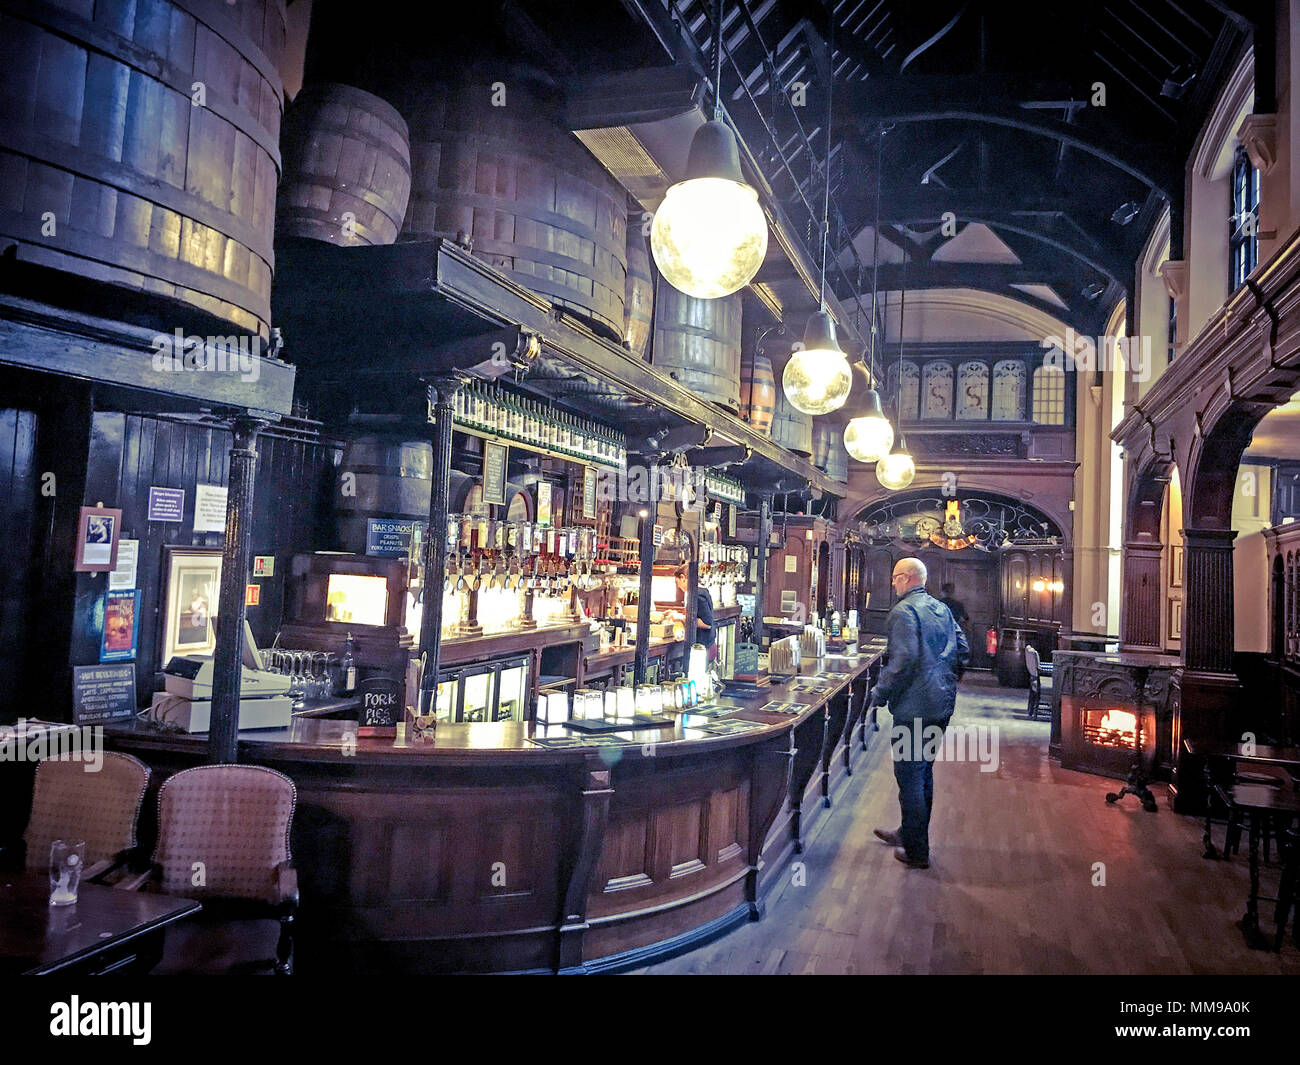 Citte von Yorke Pub, Chancelry Lane, Holborn, London, England, Großbritannien Stockfoto